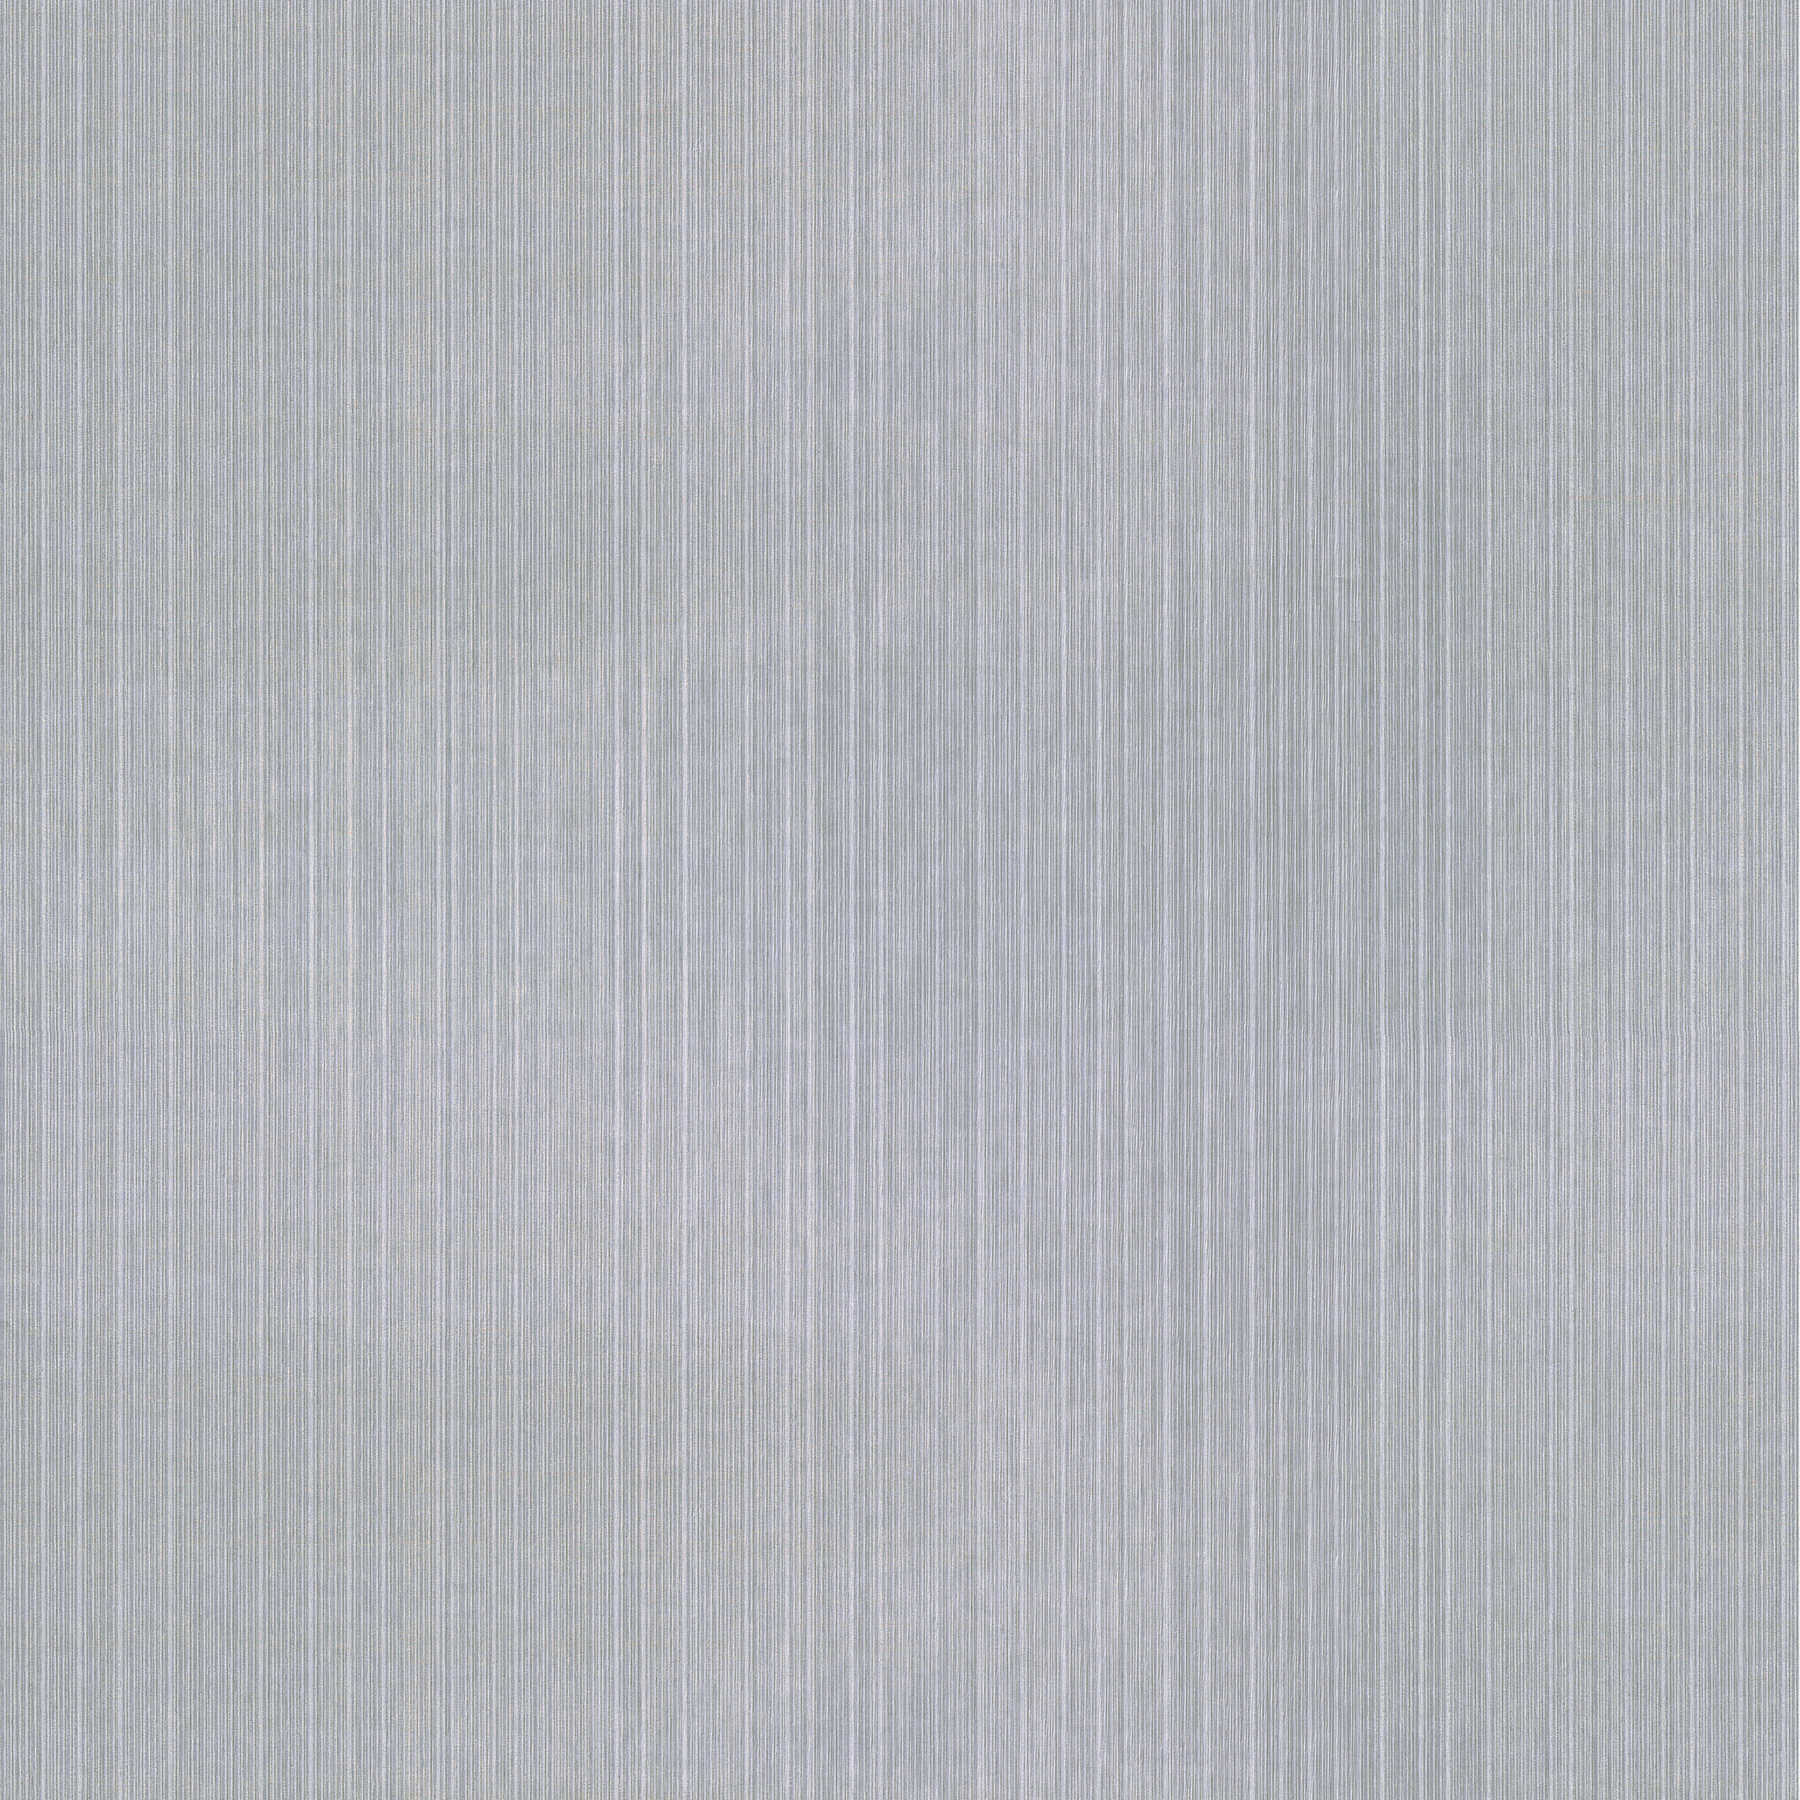         Papier peint intissé chiné avec accents métalliques - argent, gris
    